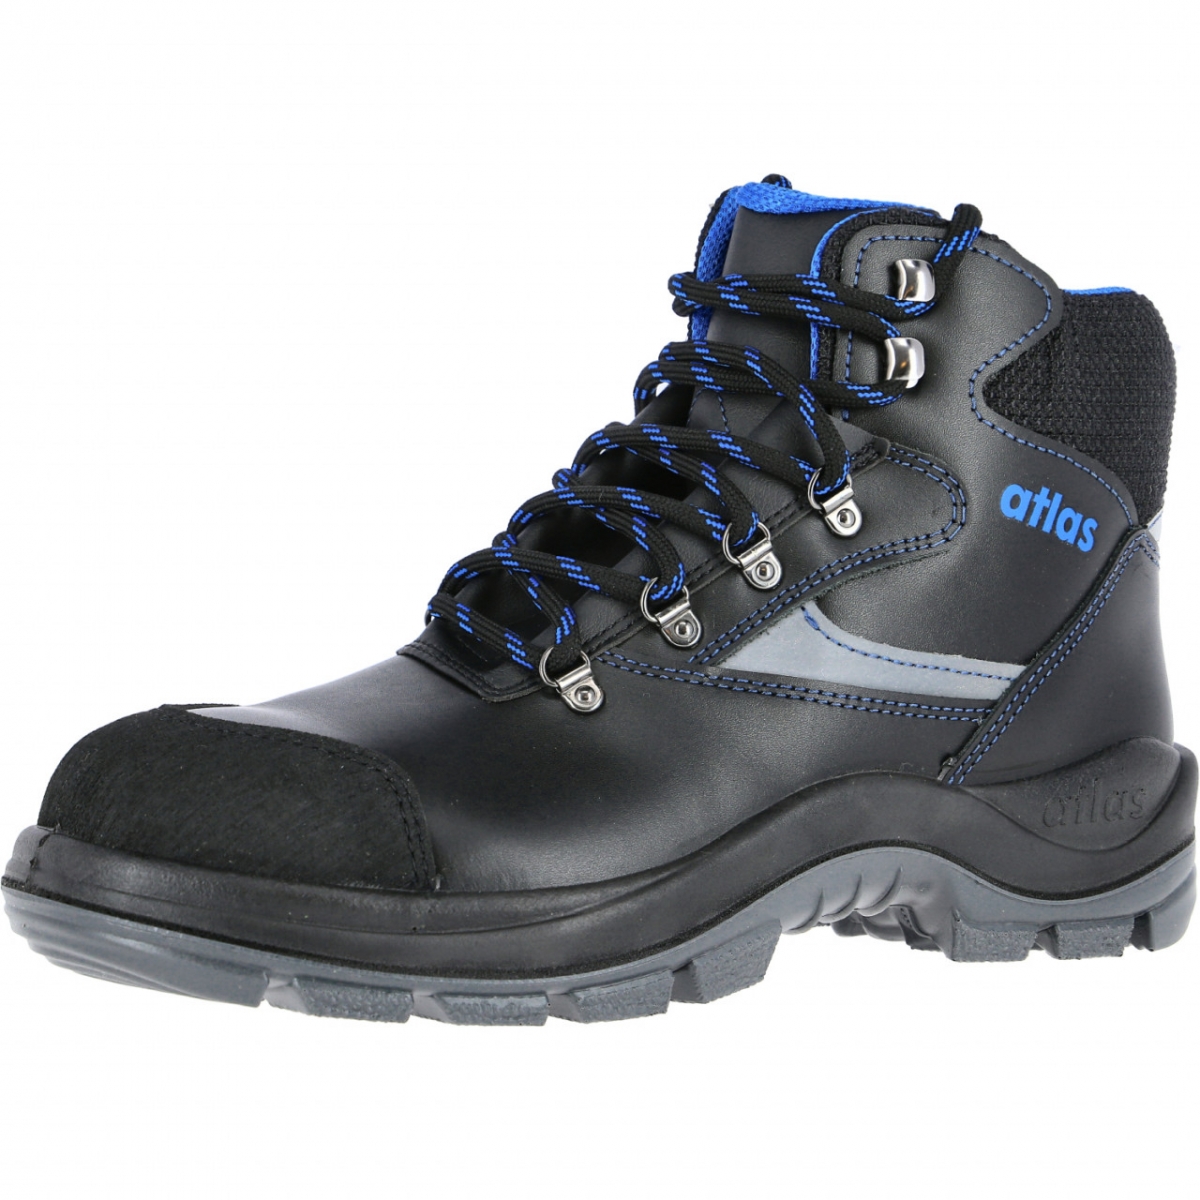 Atlas-Footwear, S3 Arbeits-Berufs-Sicherheits-Schuhe, Hochschuhe, ERGO-MED DUO 737, Weite: 13, schwarz